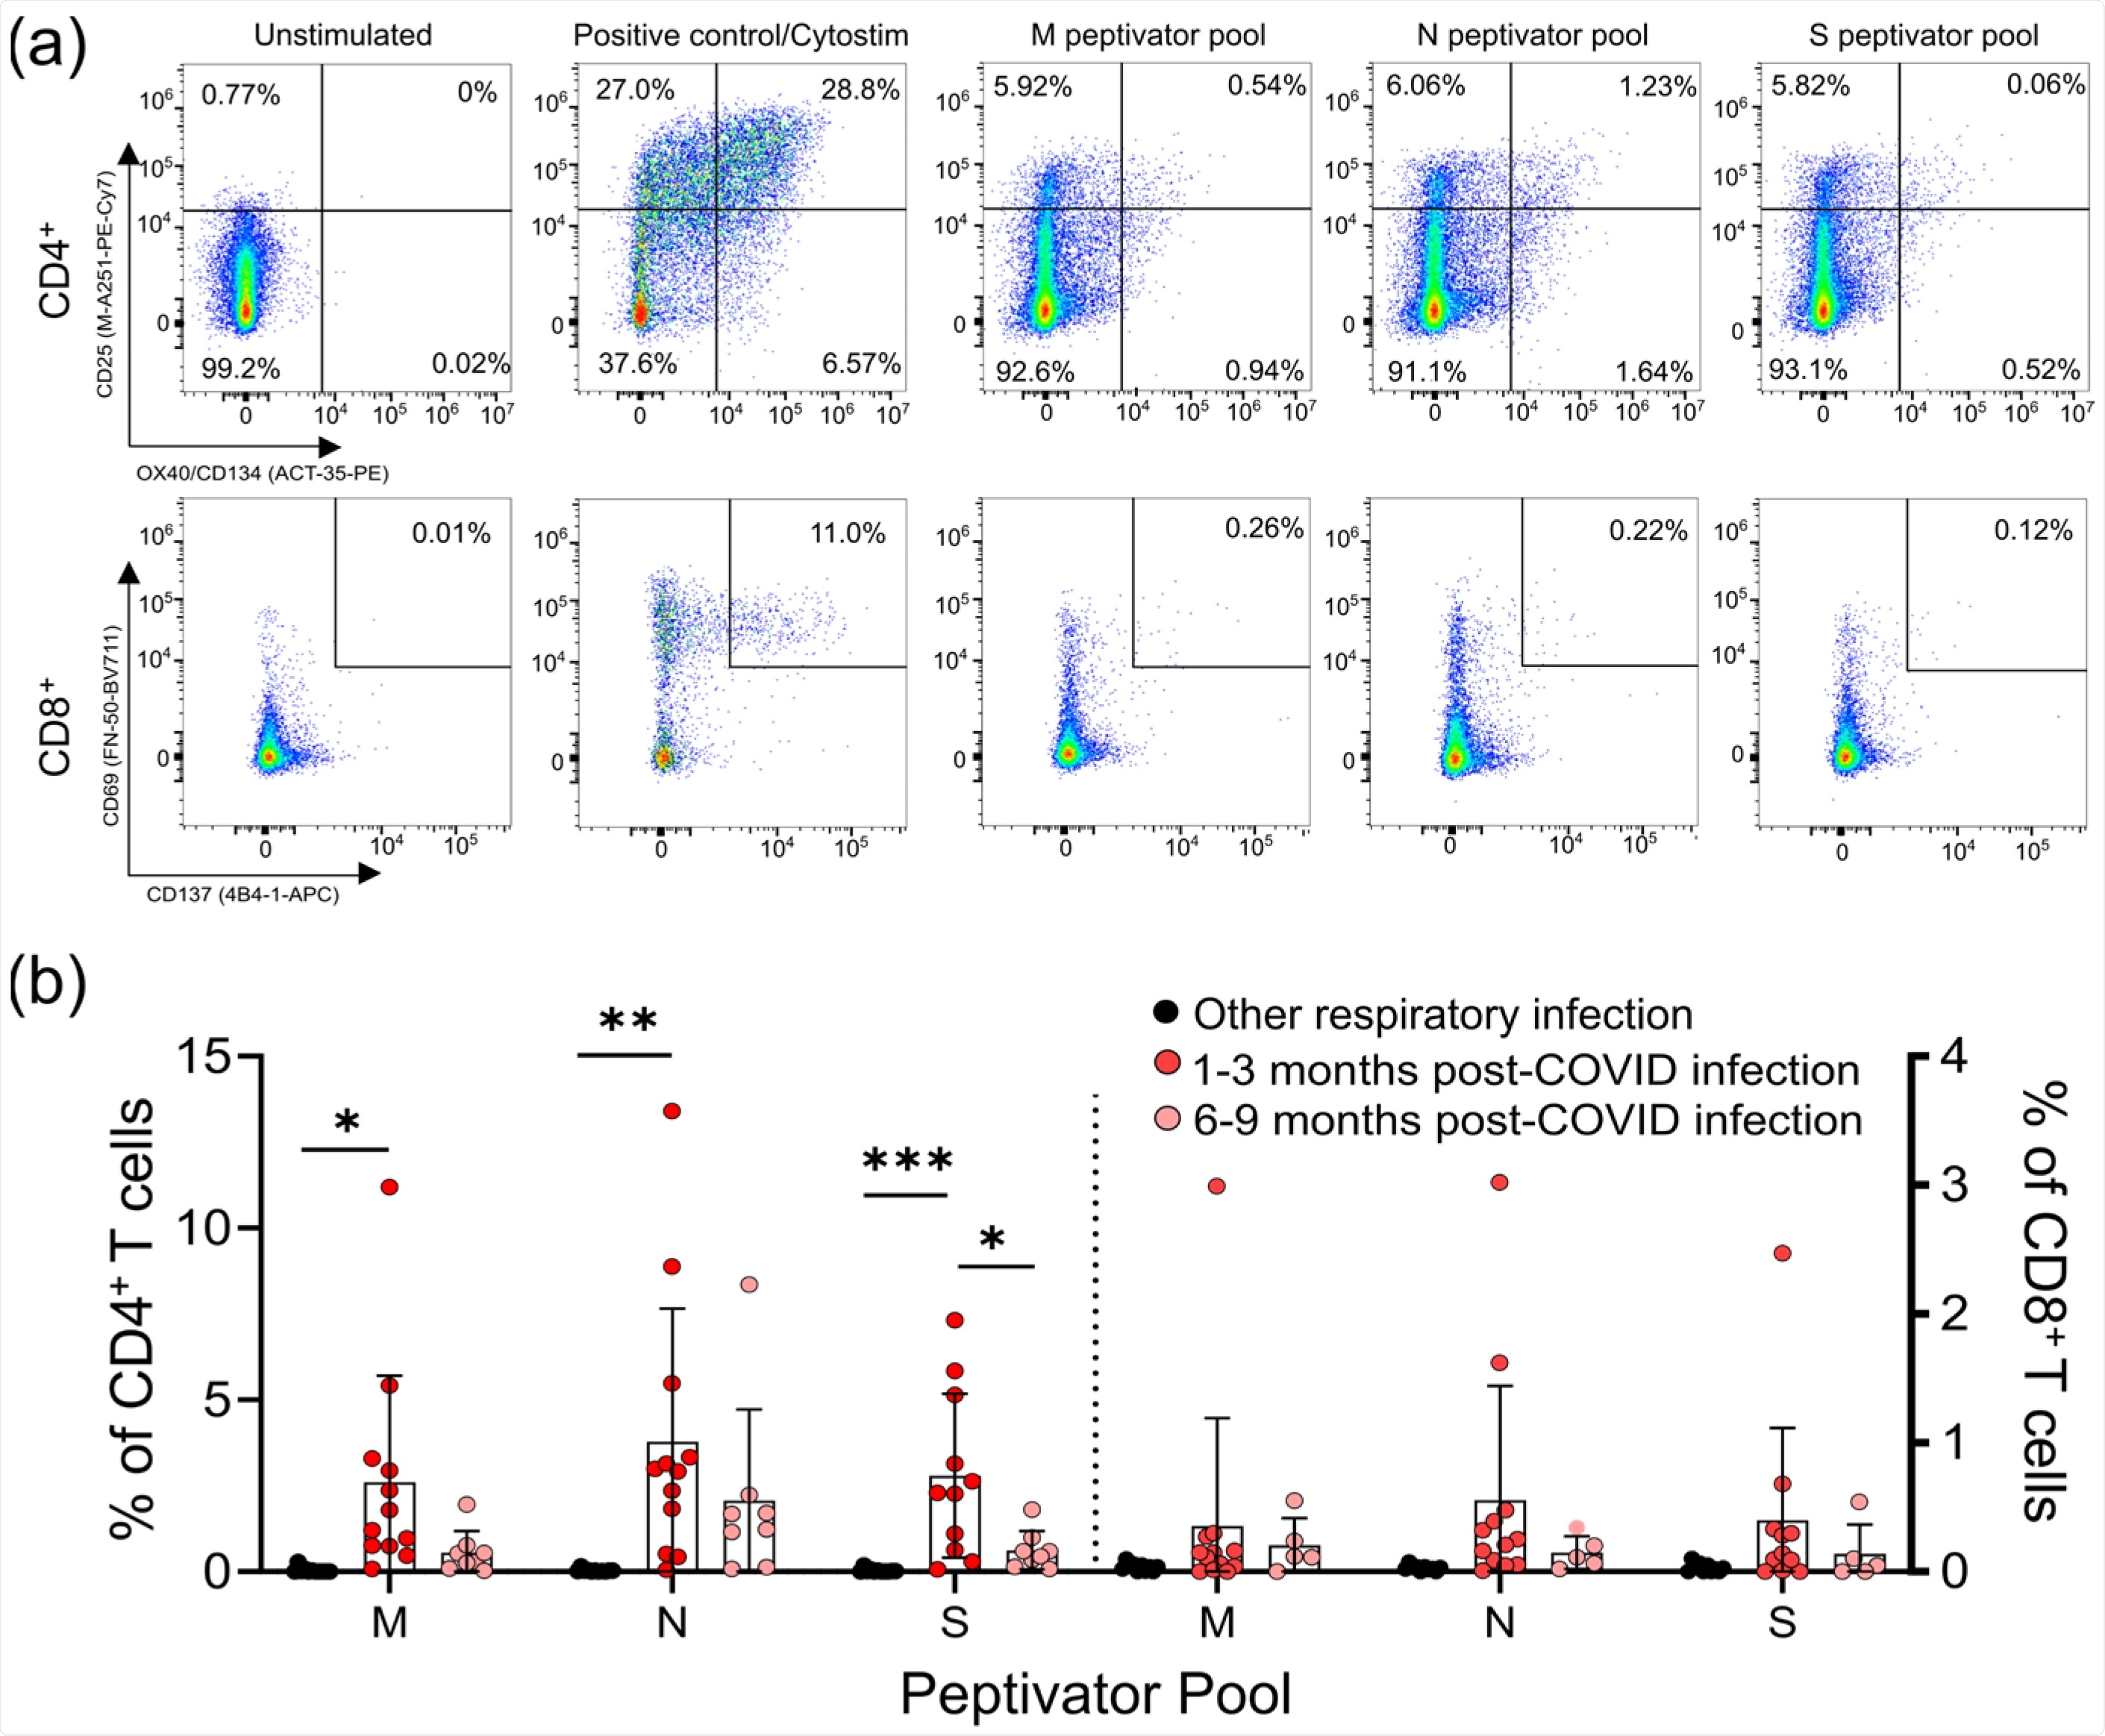 हल्के सार्स-सीओवी-2 संक्रमण के बाद एम, एन, और एस पेप्टाइड पूल के लिए सीडी4+ और सीडी8+ टी-सेल प्रतिक्रियाएं।  (ए) एसएआरएस-सीओवी-2-विशिष्ट टी-कोशिकाओं की संख्या को सीडी4+ टी-कोशिकाओं के प्रतिशत के रूप में मापा जाता है, जो सीडी25 और ओएक्स40, या सीडी8+ टी-कोशिकाओं दोनों को व्यक्त करते हैं, जो एस, एम के साथ सक्रियण के बाद सीडी69 और सीडी137 दोनों को व्यक्त करते हैं। , या एन पेप्टाइड पूल संक्रमण के 1-3 महीने और 6-9 महीने बाद।  पॉलीक्लोनल एक्टीवेटर साइटोस्टिम का उपयोग सकारात्मक नियंत्रण के रूप में किया जाता है।  (बी) सभी COVID-19 सेरोपोसिटिव प्रतिभागियों में सेरोनगेटिव की तुलना में हल्के COVID-19 संक्रमण के 1-3 महीने बाद M, N, या S एंटीजन में से कम से कम एक के जवाब में CD25 + OX40 + CD4 + T-कोशिकाओं में वृद्धि हुई थी। अन्य हल्के श्वसन संक्रमणों से उबरने वाले व्यक्ति।  प्रत्येक प्रतिभागी को एक एकल डेटा बिंदु द्वारा इंगित किया जाता है: अन्य श्वसन संक्रमण n = 11;  1-3 महीने बाद COVID-19 संक्रमण n = 11;  COVID-19 संक्रमण के 6-9 महीने बाद n = 8. वेल्च के वन-वे एनोवा और गेम्स-हॉवेल पोस्ट-हॉक टेस्ट का उपयोग करके कई समूह तुलनाओं का परीक्षण किया गया;  बार माध्य ± मानक विचलन का प्रतिनिधित्व करते हैं।  * पी <0.05;  ** पी <0.01;  *** पी <0.001।